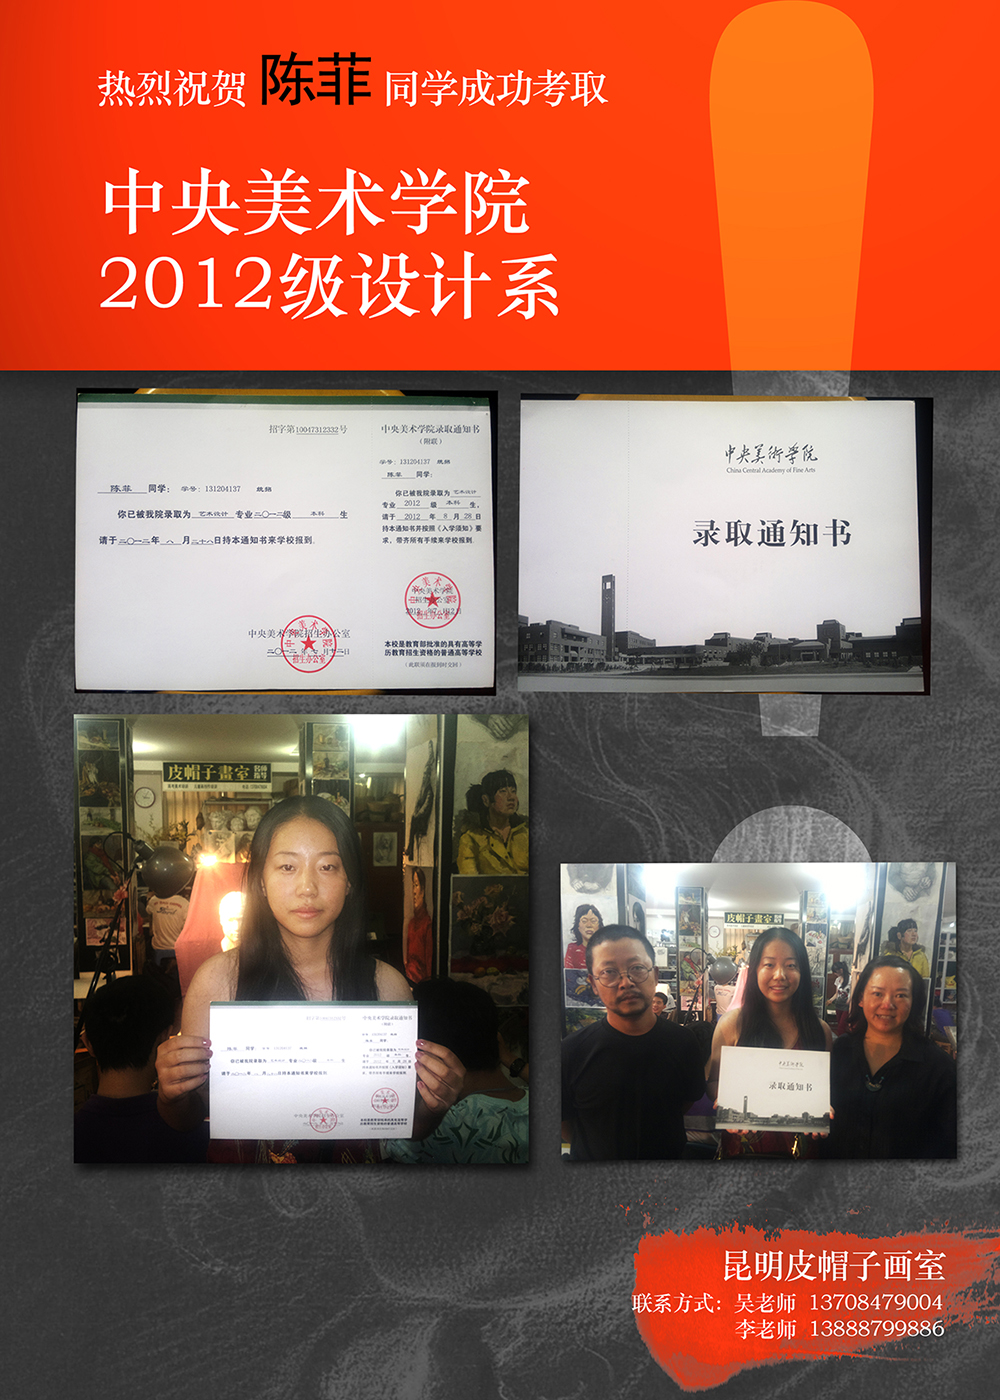 祝贺陈菲同学成功考取中央美术学院2012级设计系